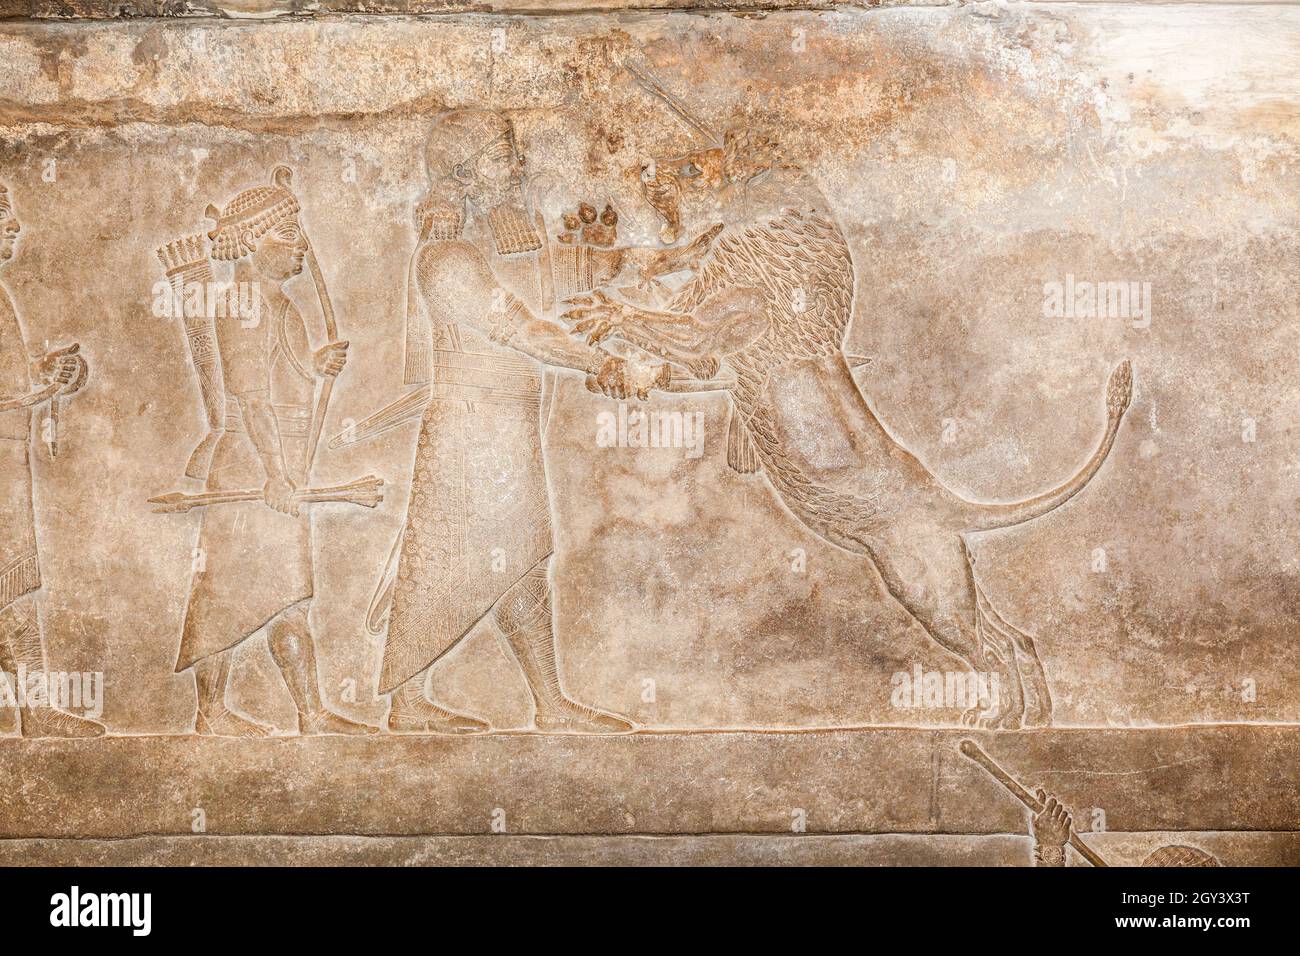 Talla asiria alrededor del 645 ac de Nínive . De una caza de leones en la arena donde el león es conducido hacia el rey que los mata. Foto de stock